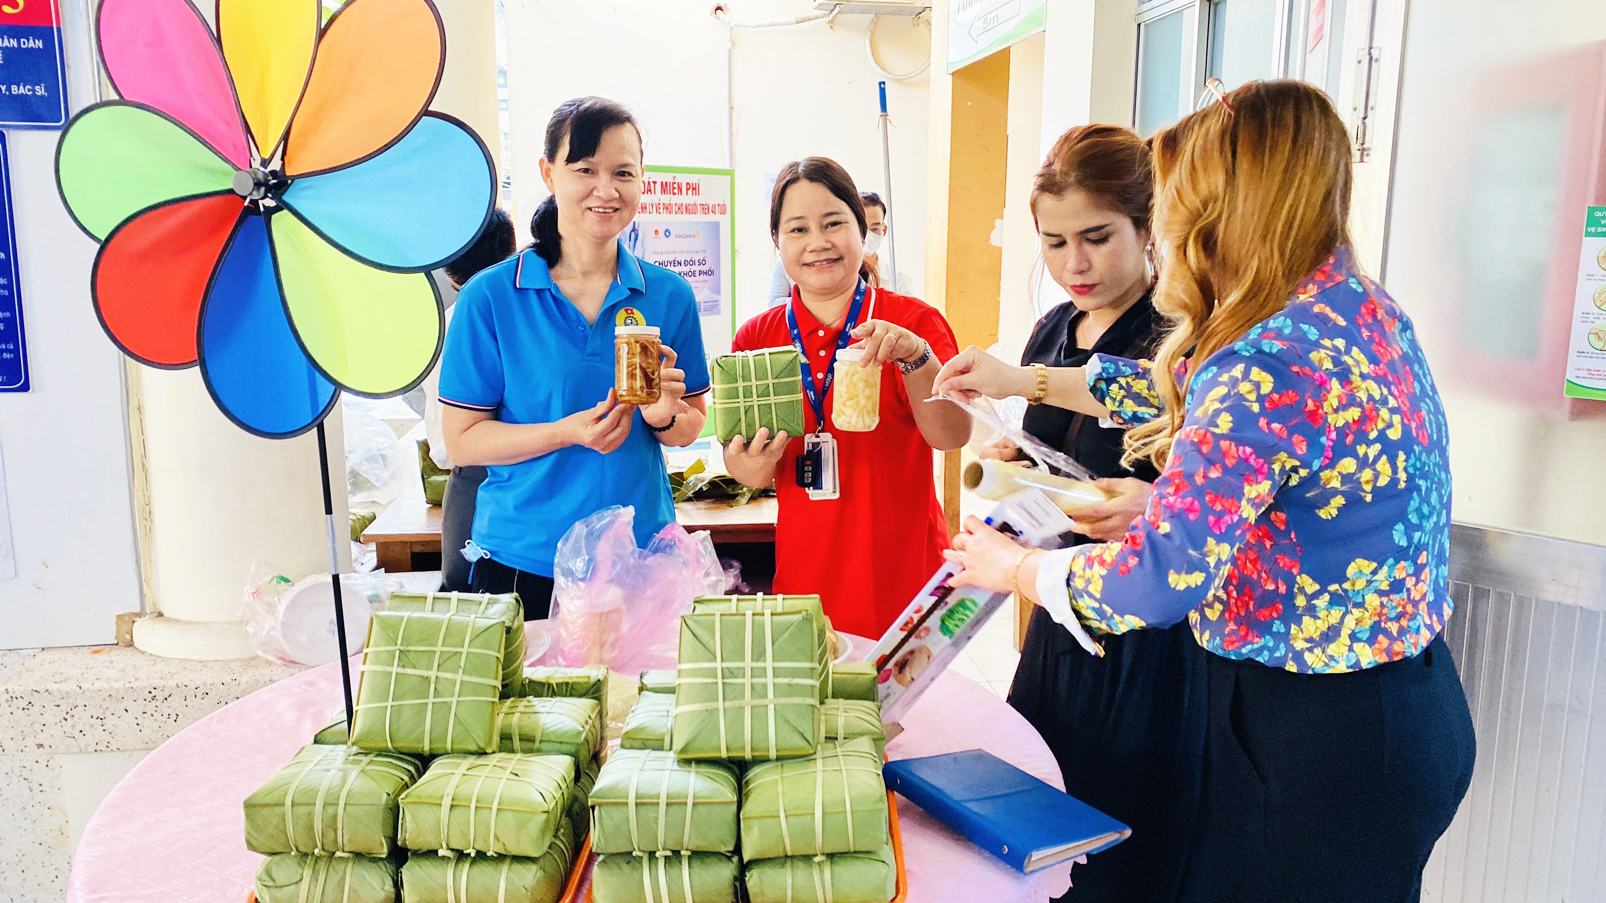 100 chiếc bánh chưng đã được trao cho các bệnh nhân có hoàn cảnh khó khăn tại Bệnh viện Lê Văn Thịnh - ẢNH: T.C.